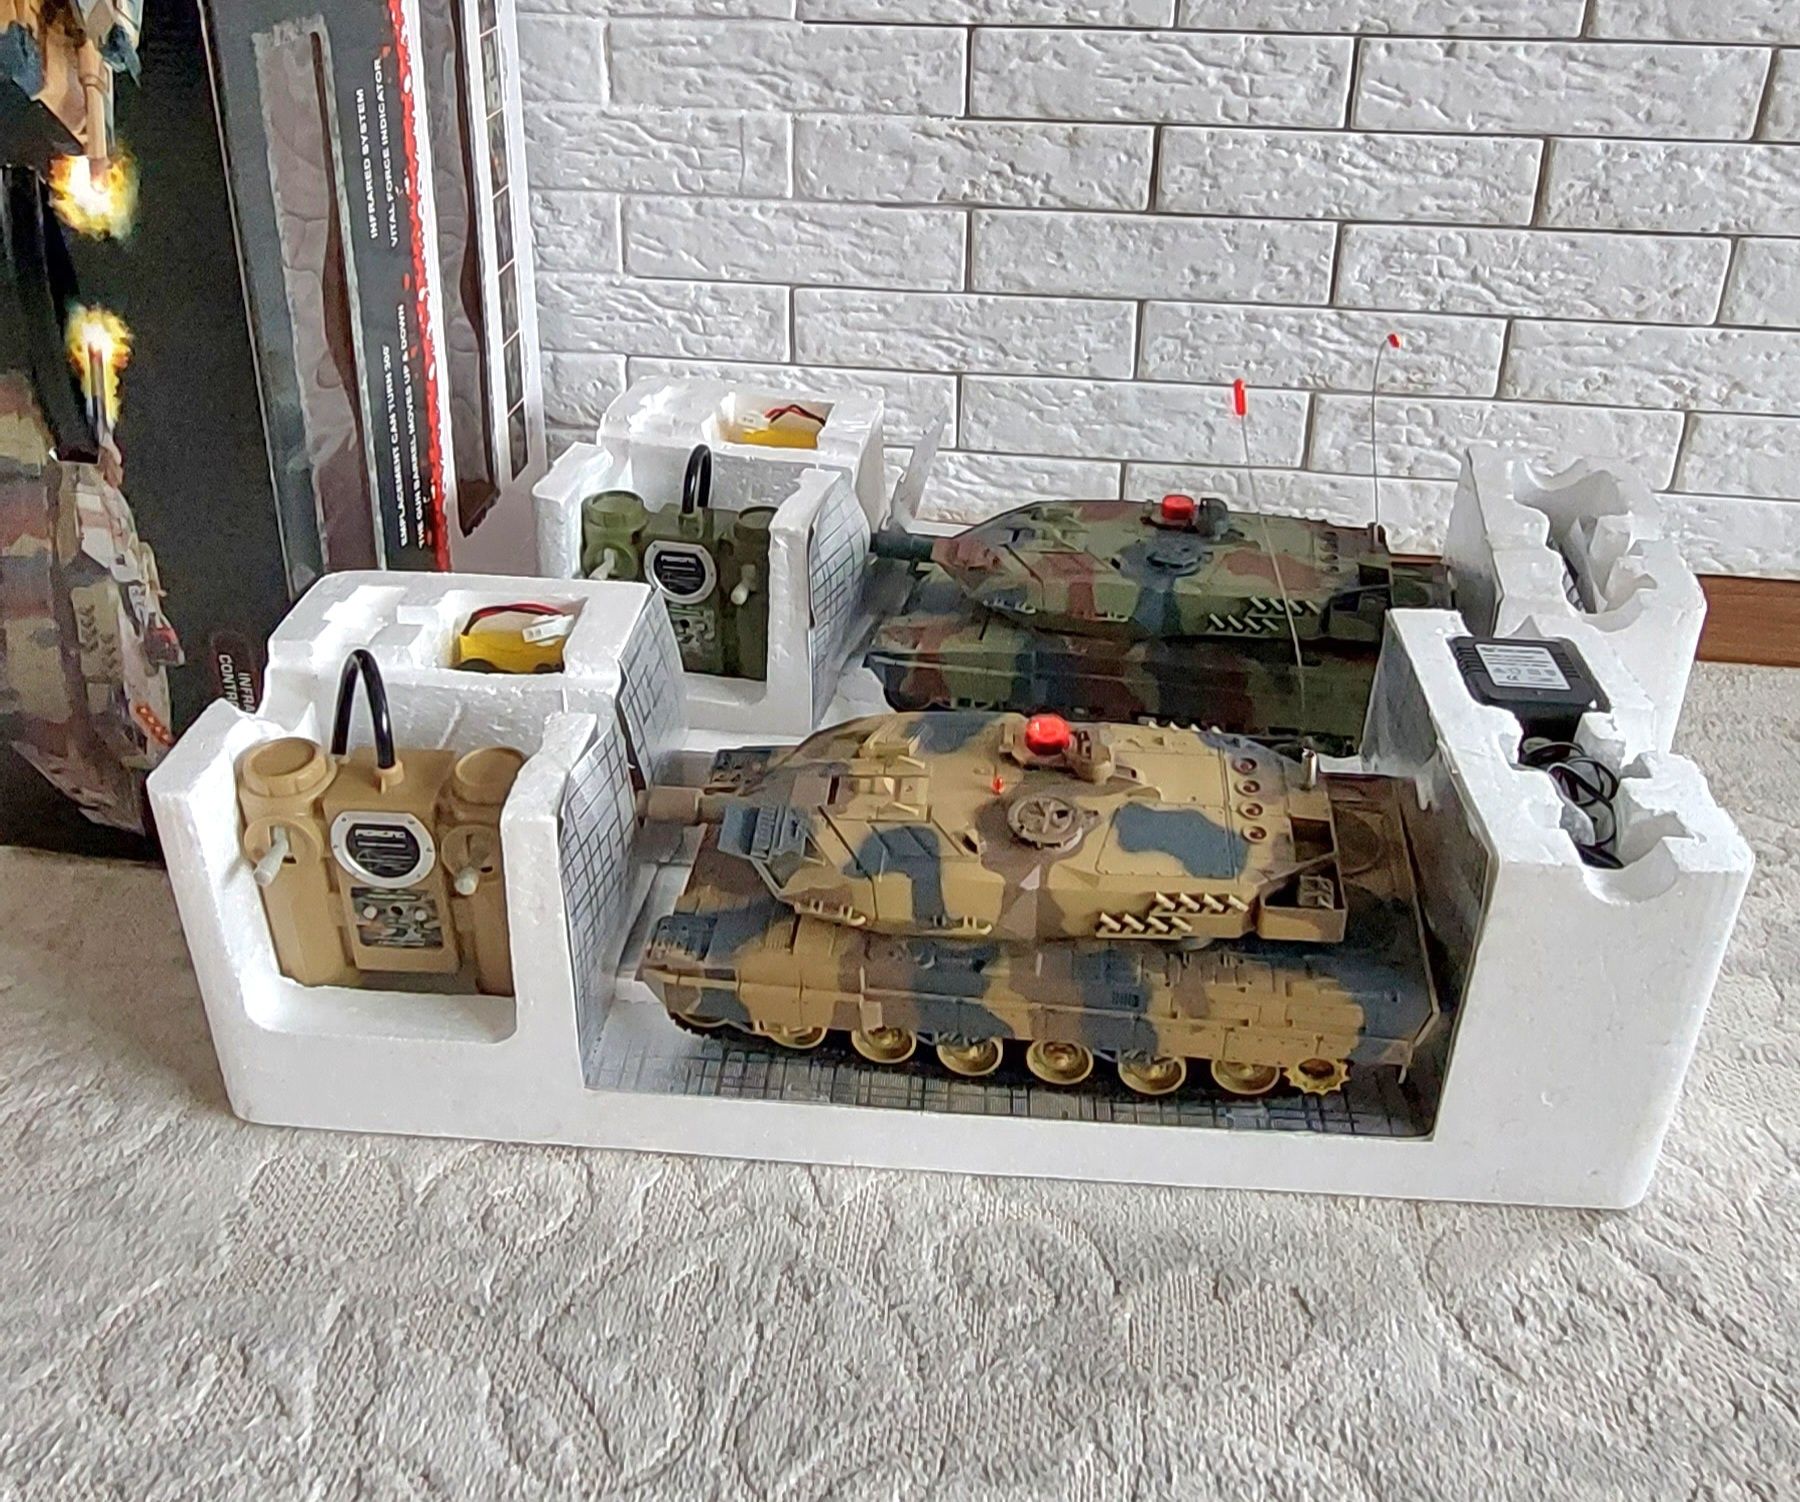 Радиоуправляемый 2 штуки танки в игровой паре.